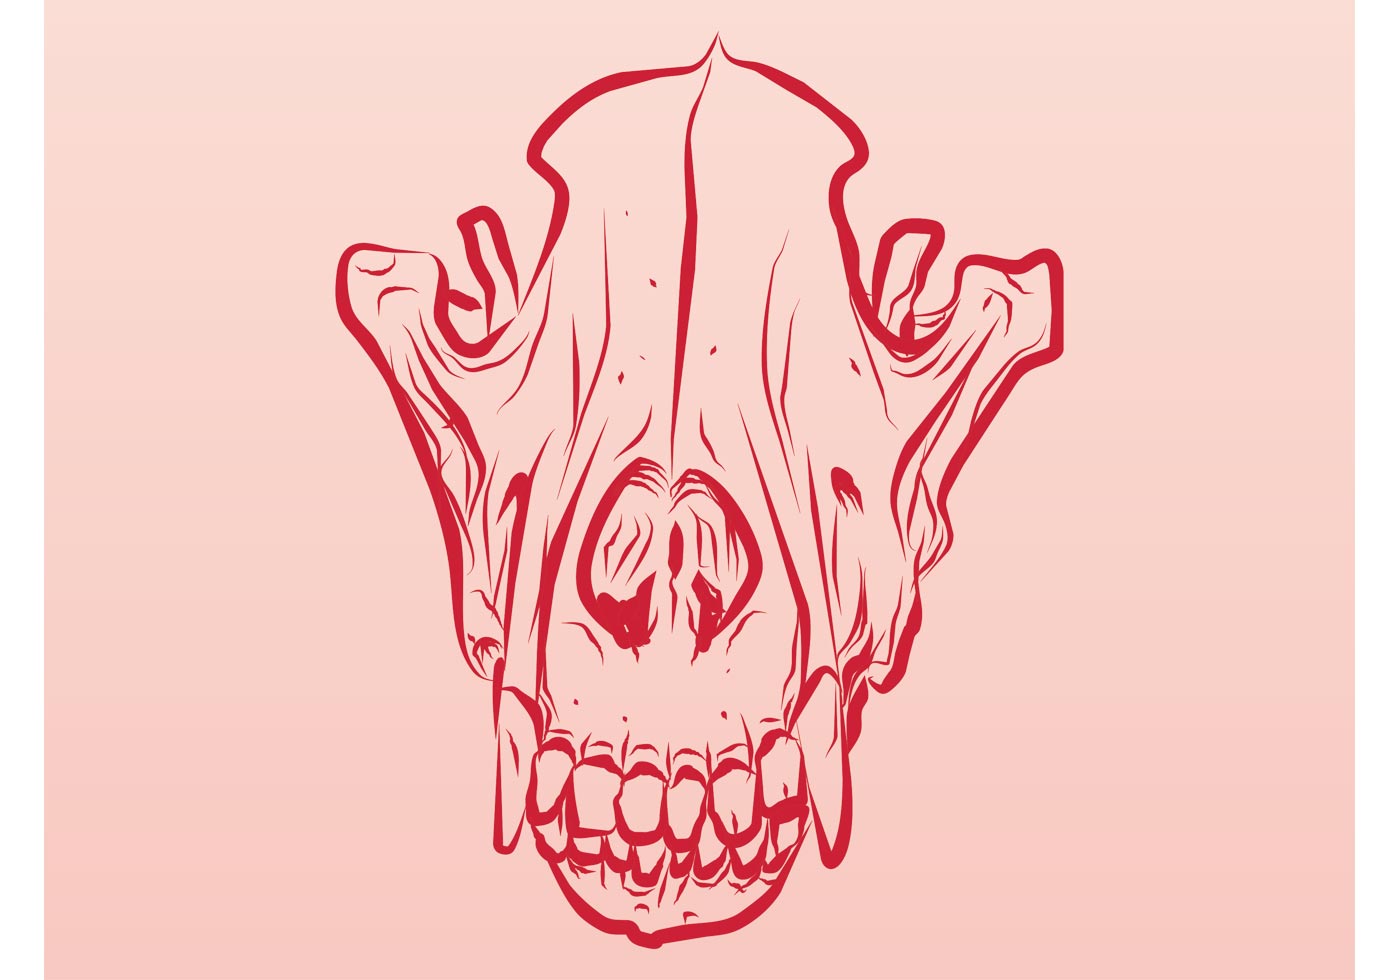 Dead Animal Skull - Download Free Vector Art, Stock ...